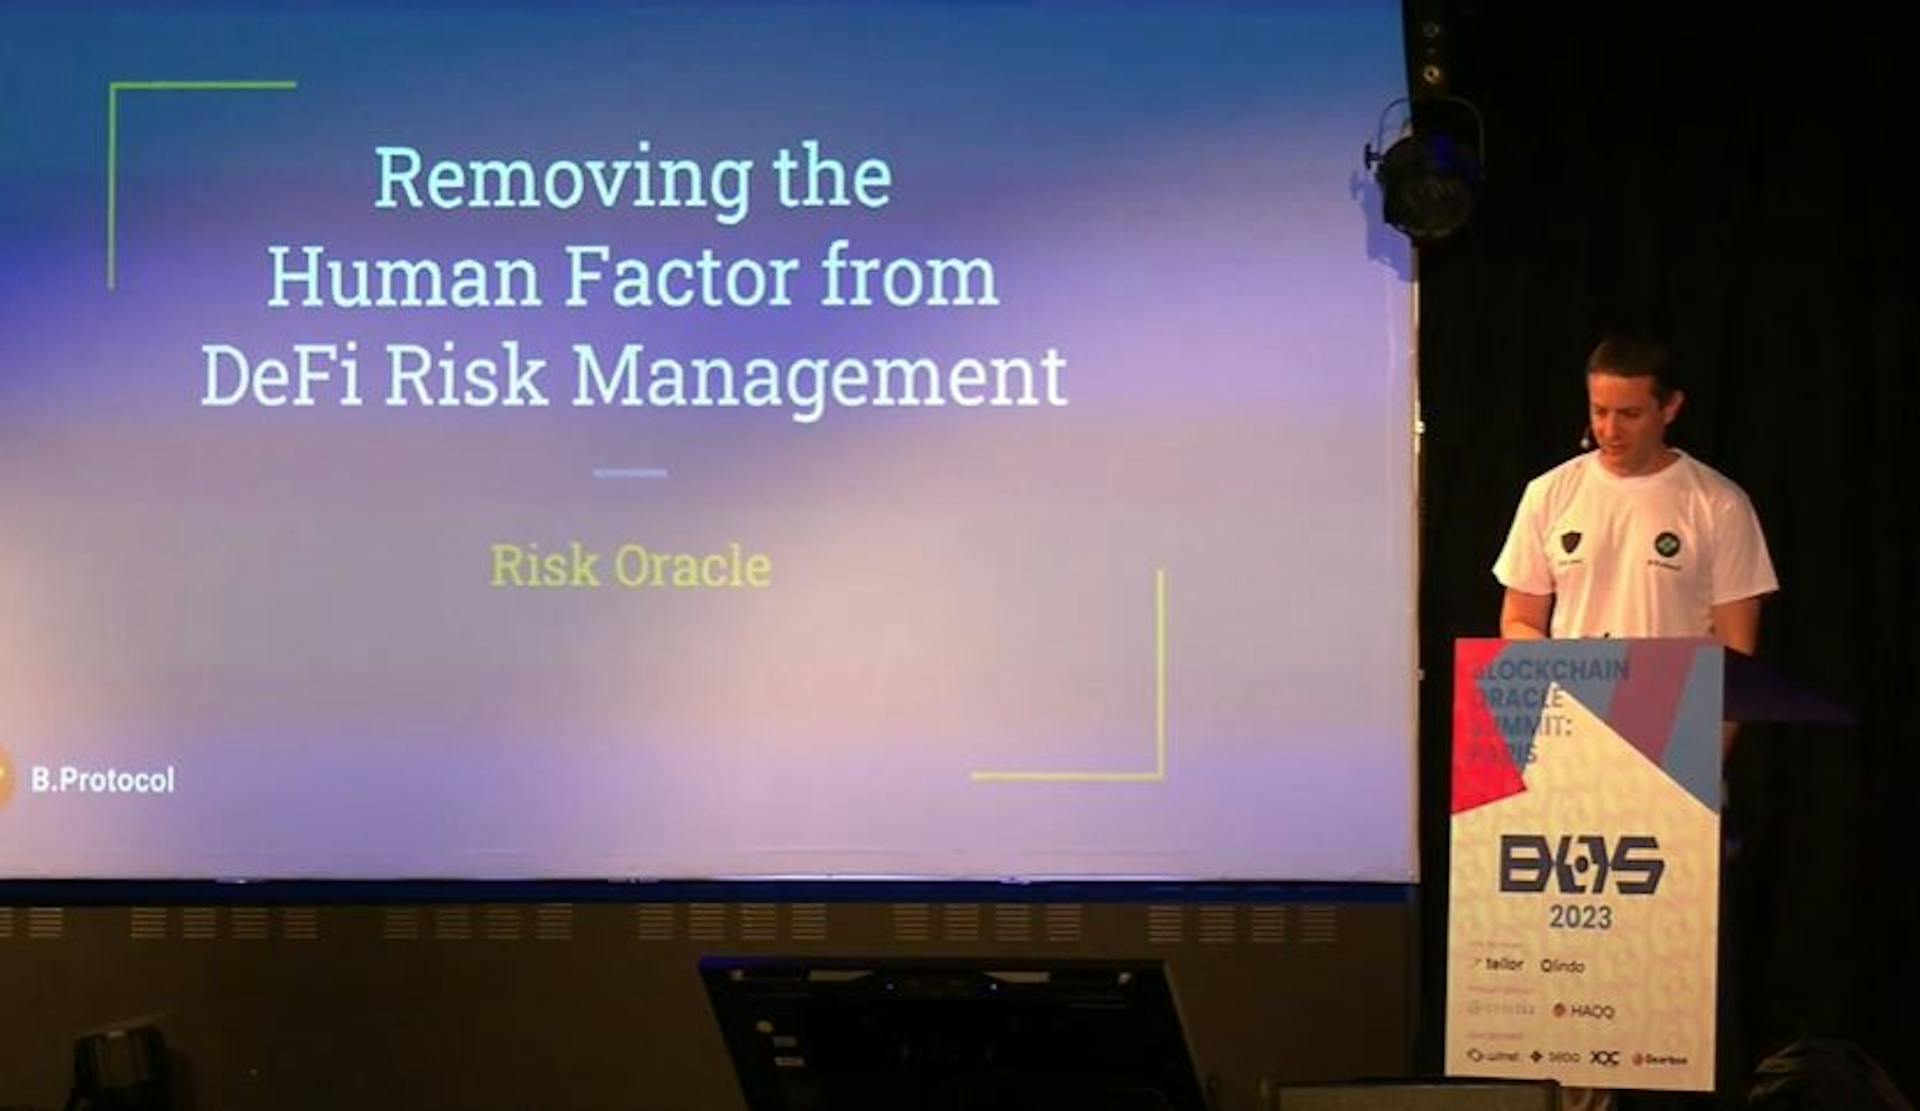 featured image - Cómo eliminar el factor humano de la gestión de riesgos de DeFi: los conceptos clave que debe conocer